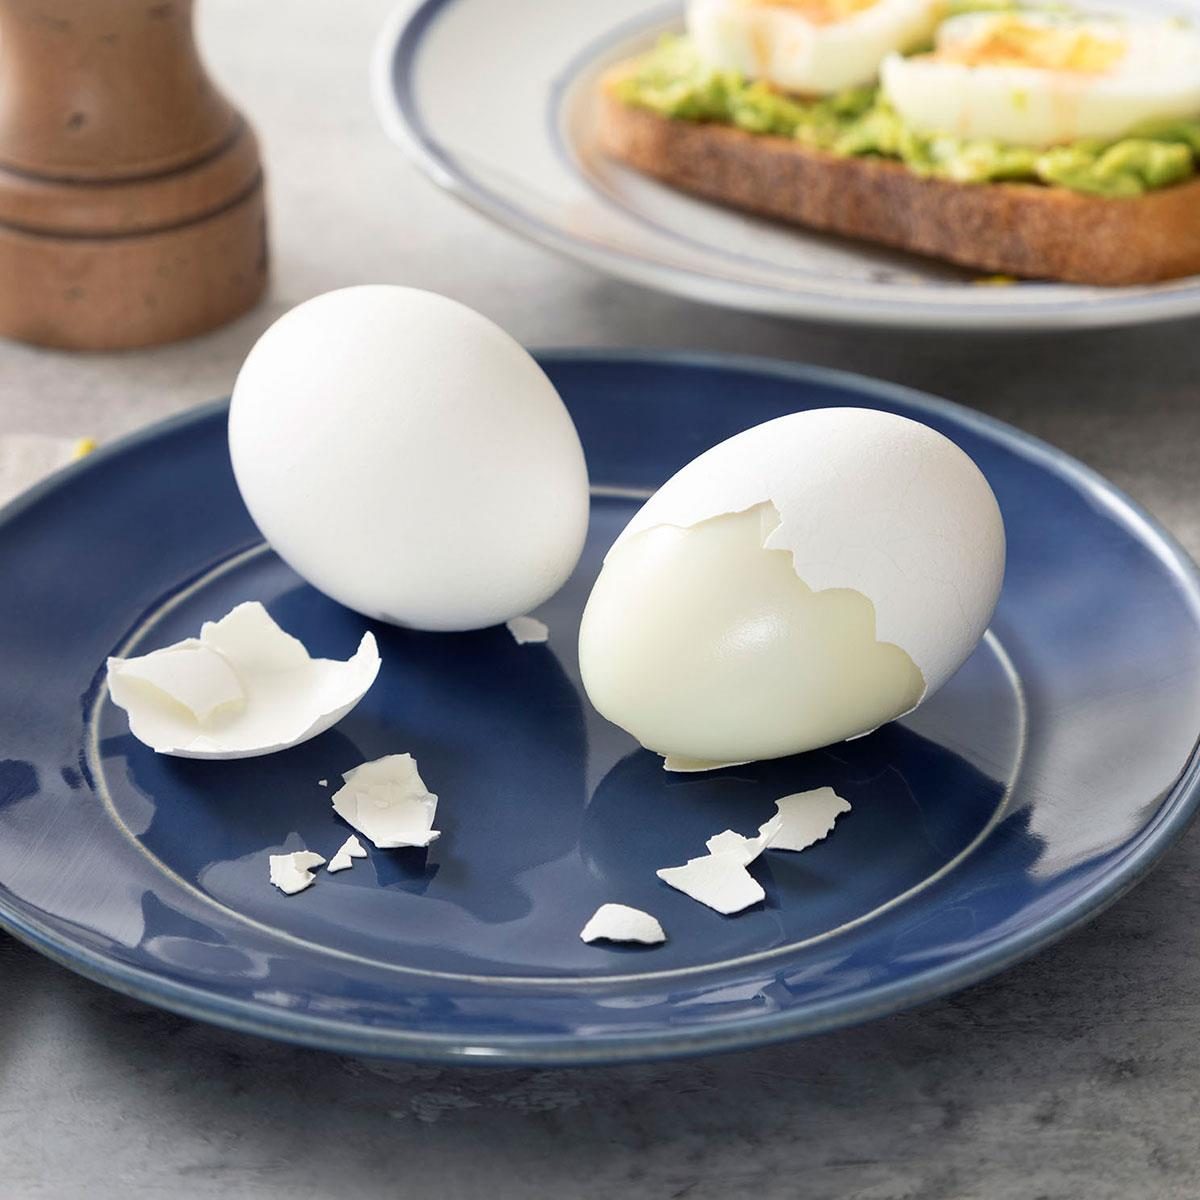 https://www.tasteofhome.com/wp-content/uploads/2021/08/Air-Fryer-Hard-Boiled-Eggs_EXPS_FT23_258451_ST_0817_5.jpg